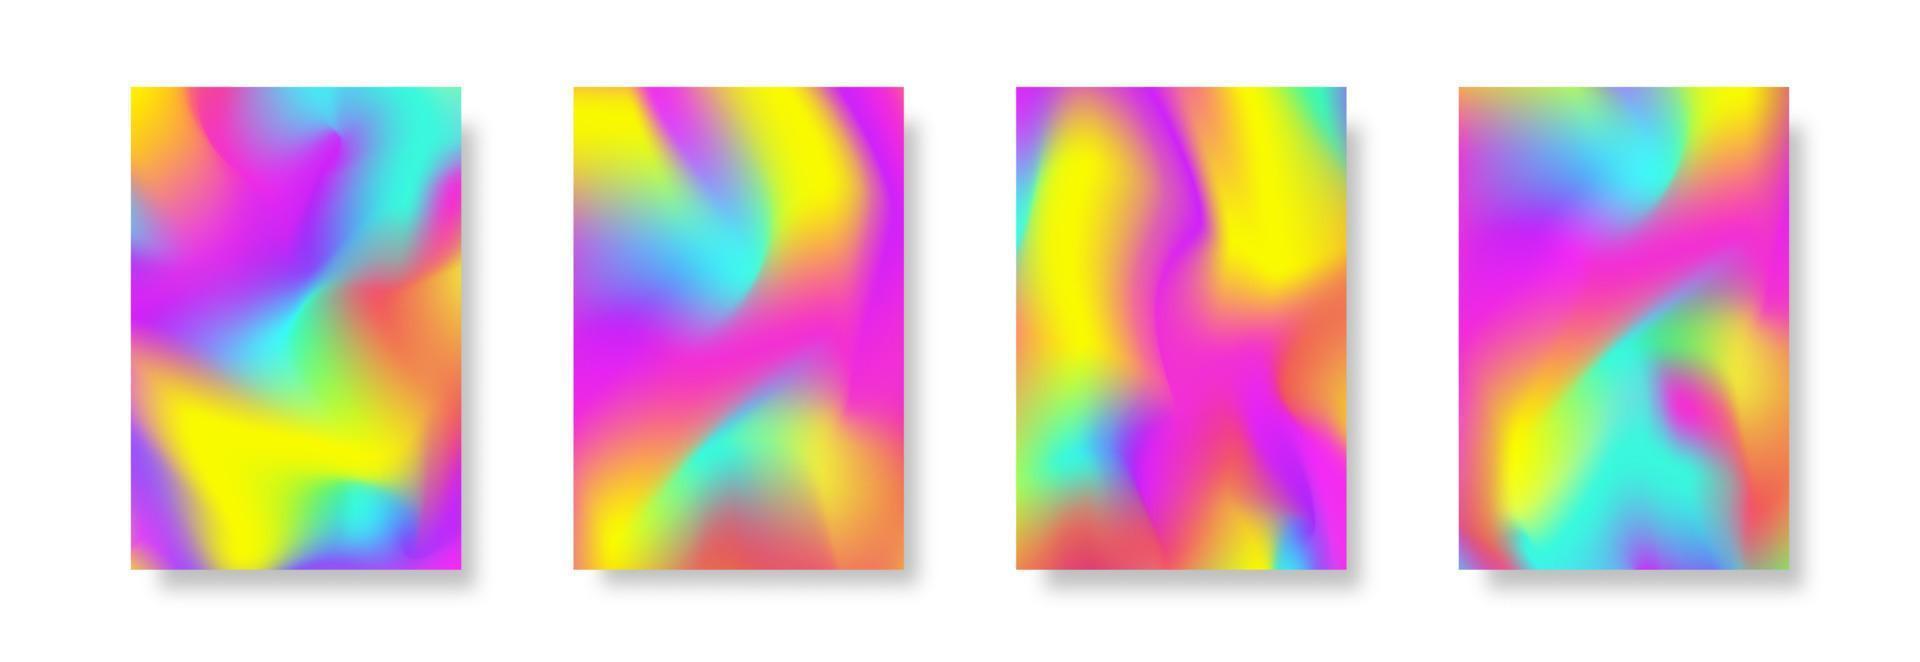 Holographie-Vektor-Cover-Design-Hintergrund mit Farbverlauf vektor